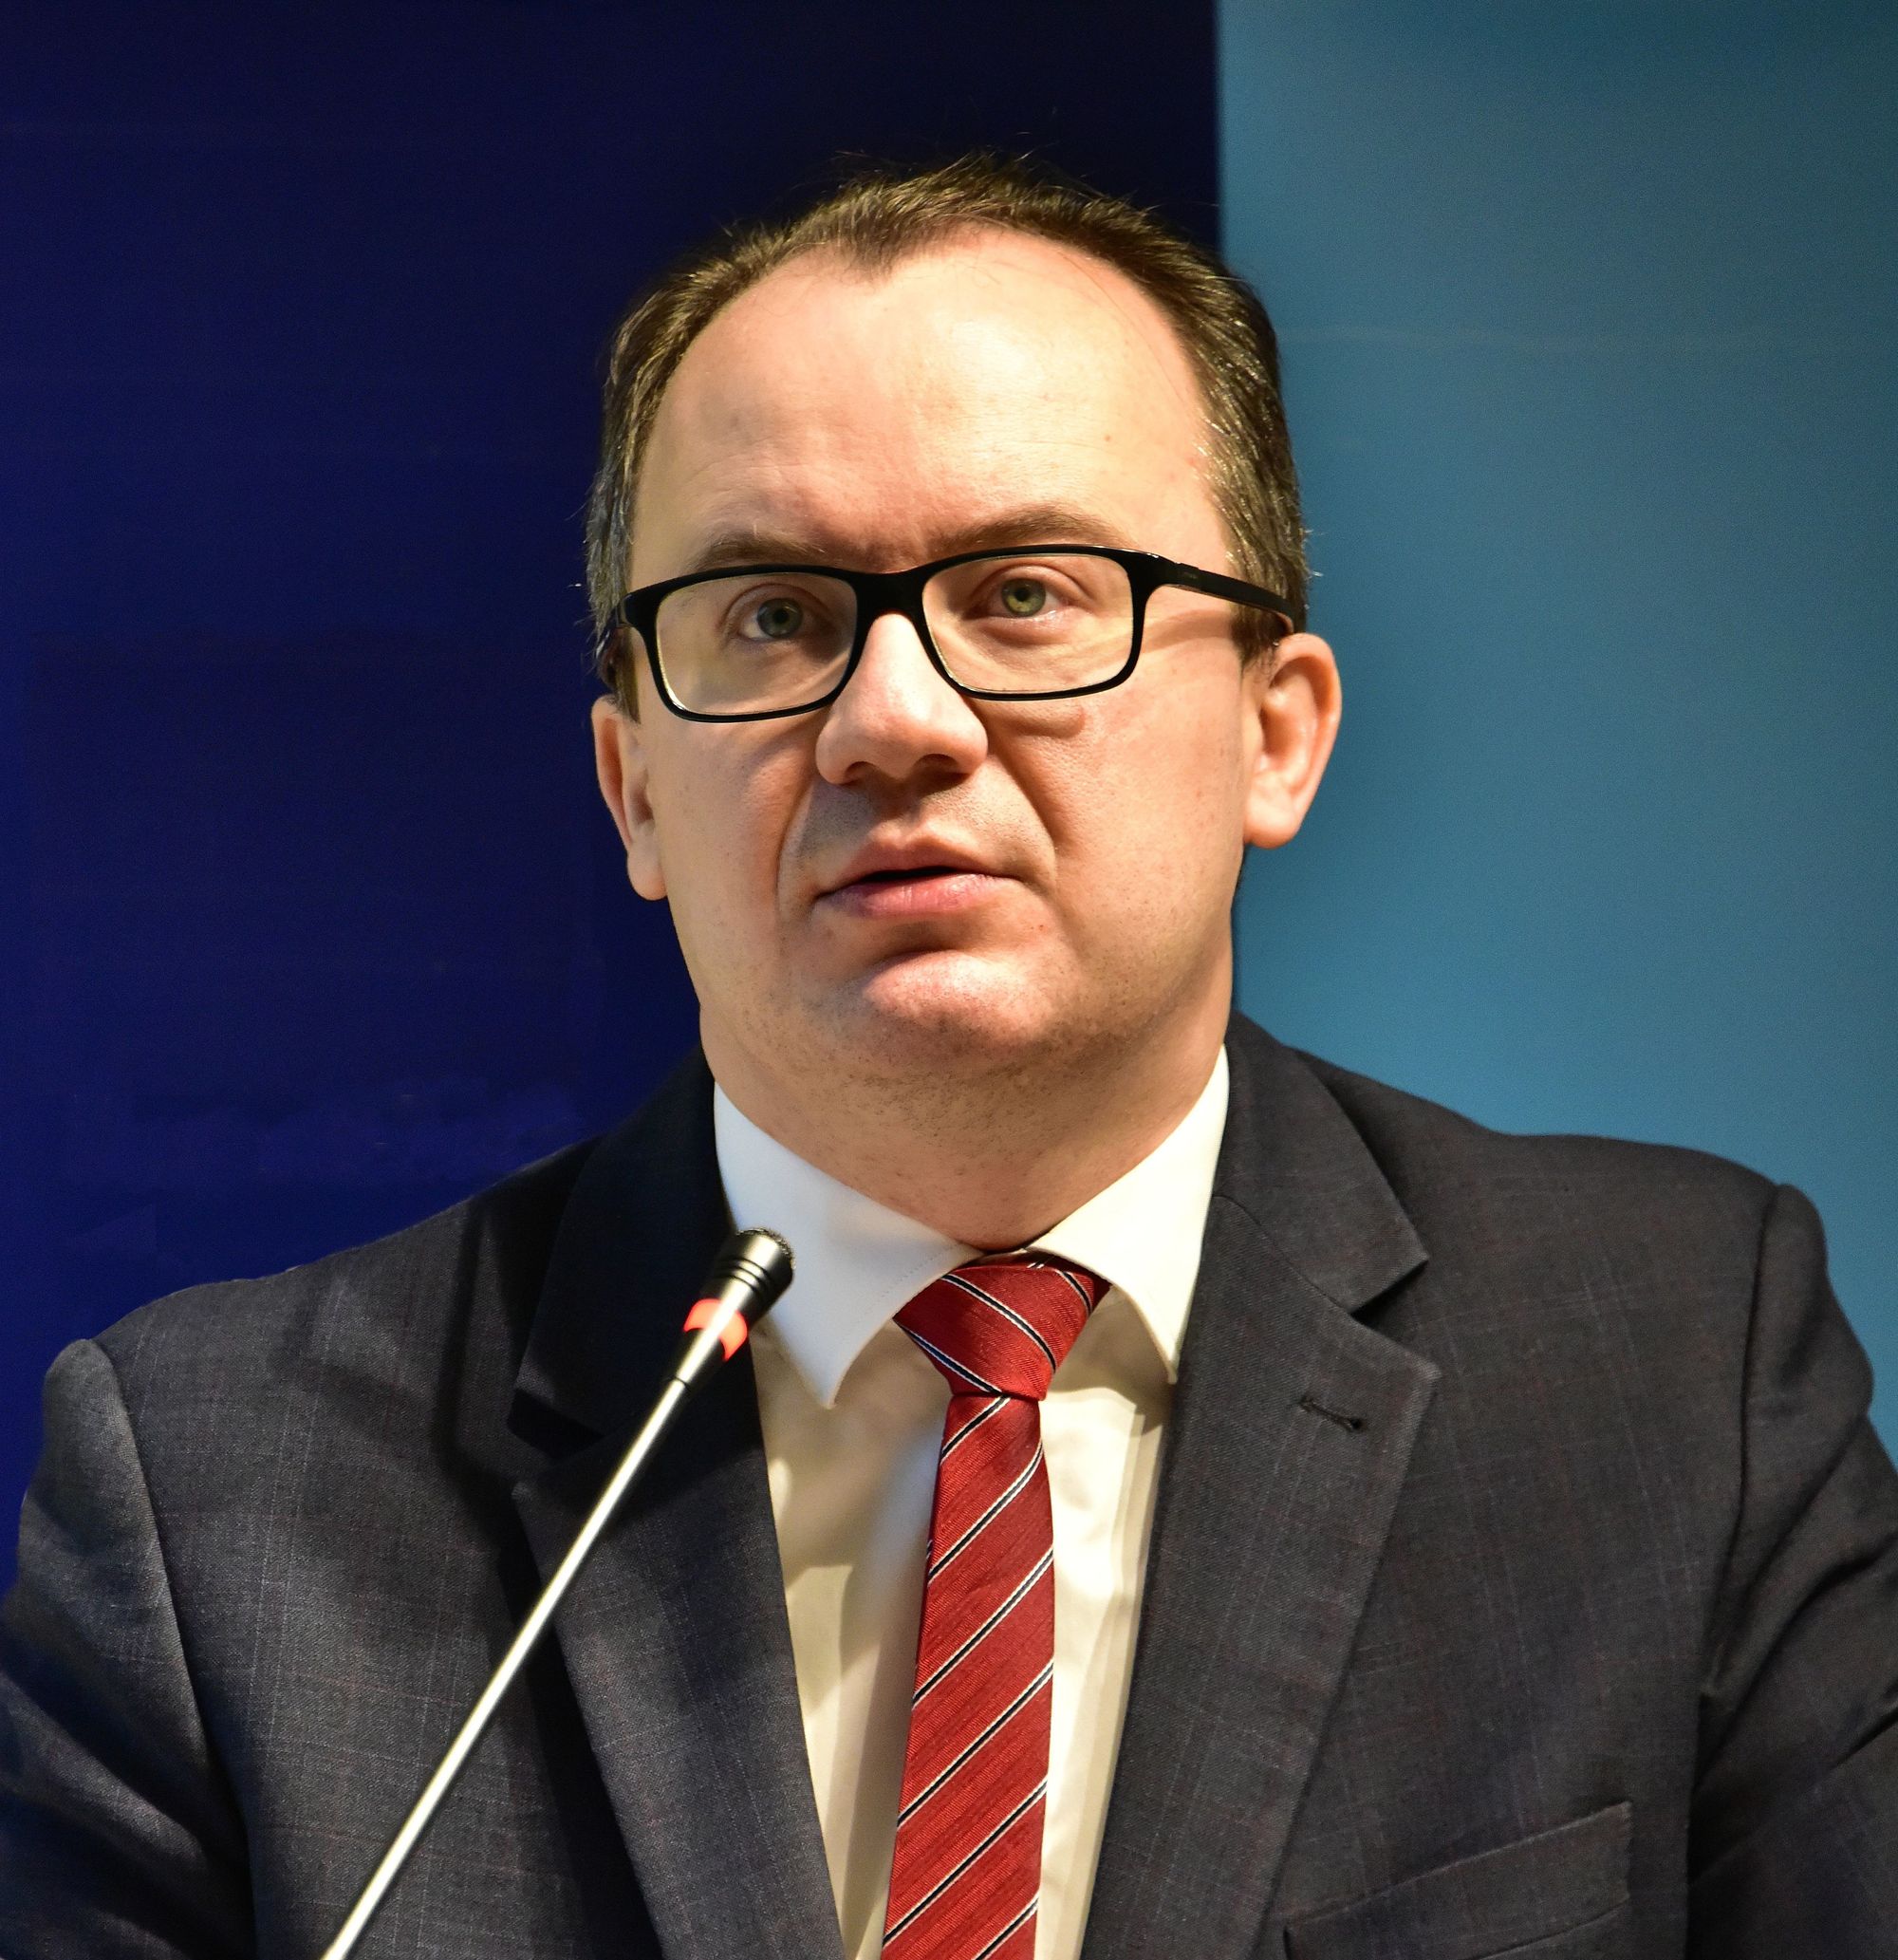 Adam Bodnar: Prawo w Polsce ustępuje przed decyzją polityczną